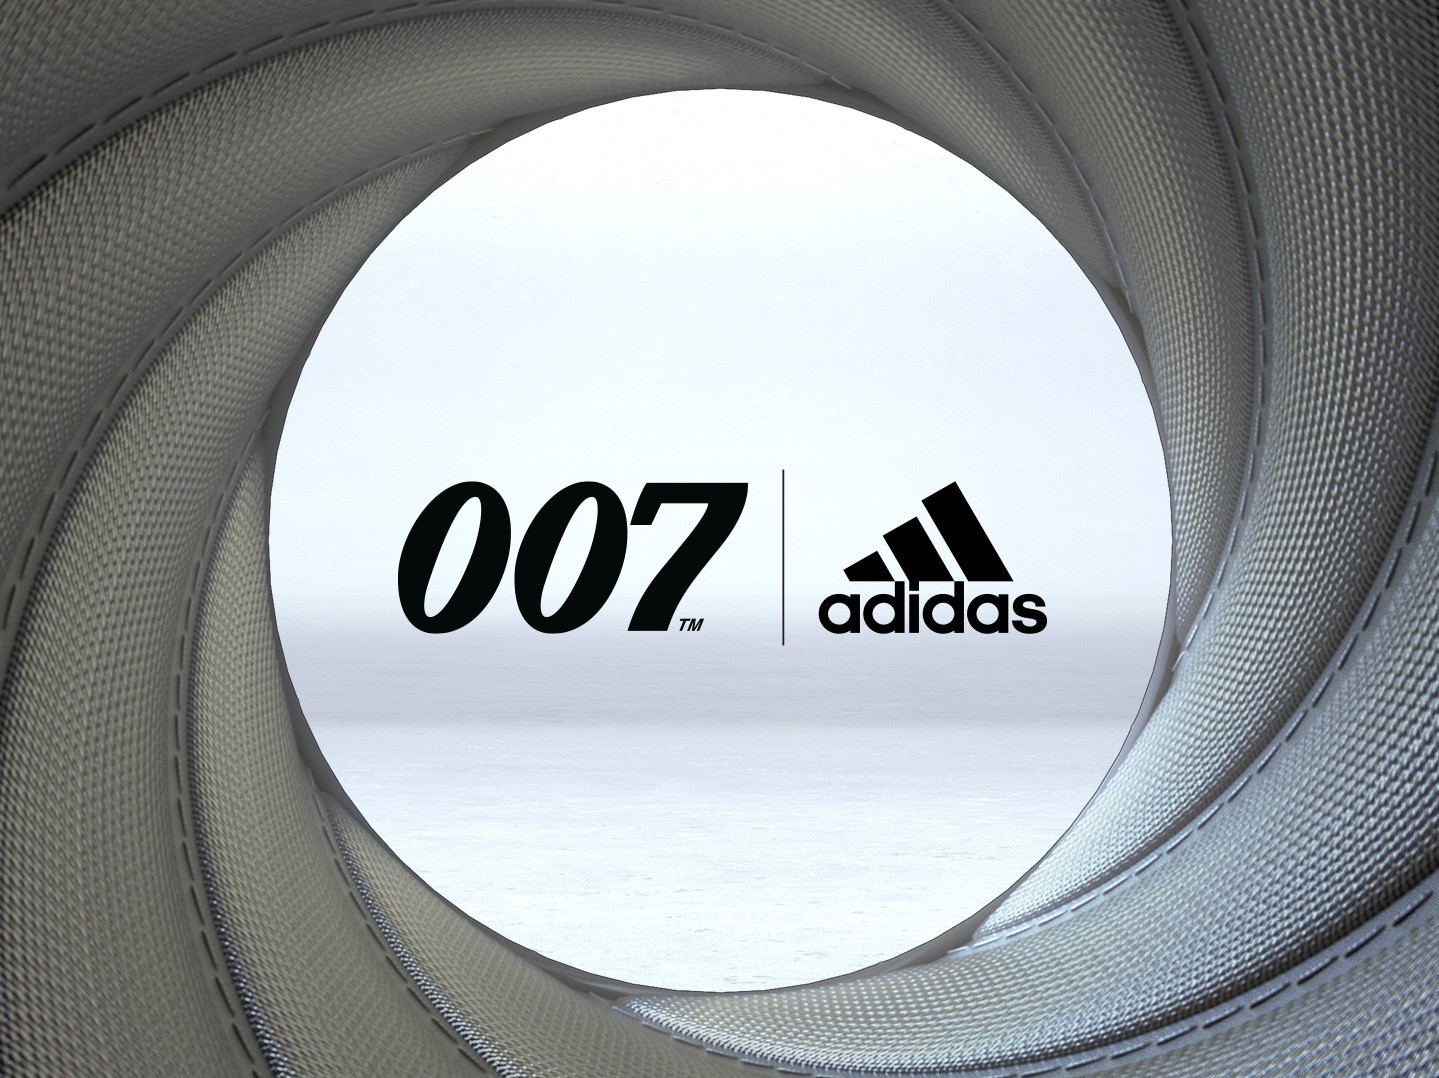 Vedd célkeresztbe az új adidas x James Bond kollekciót